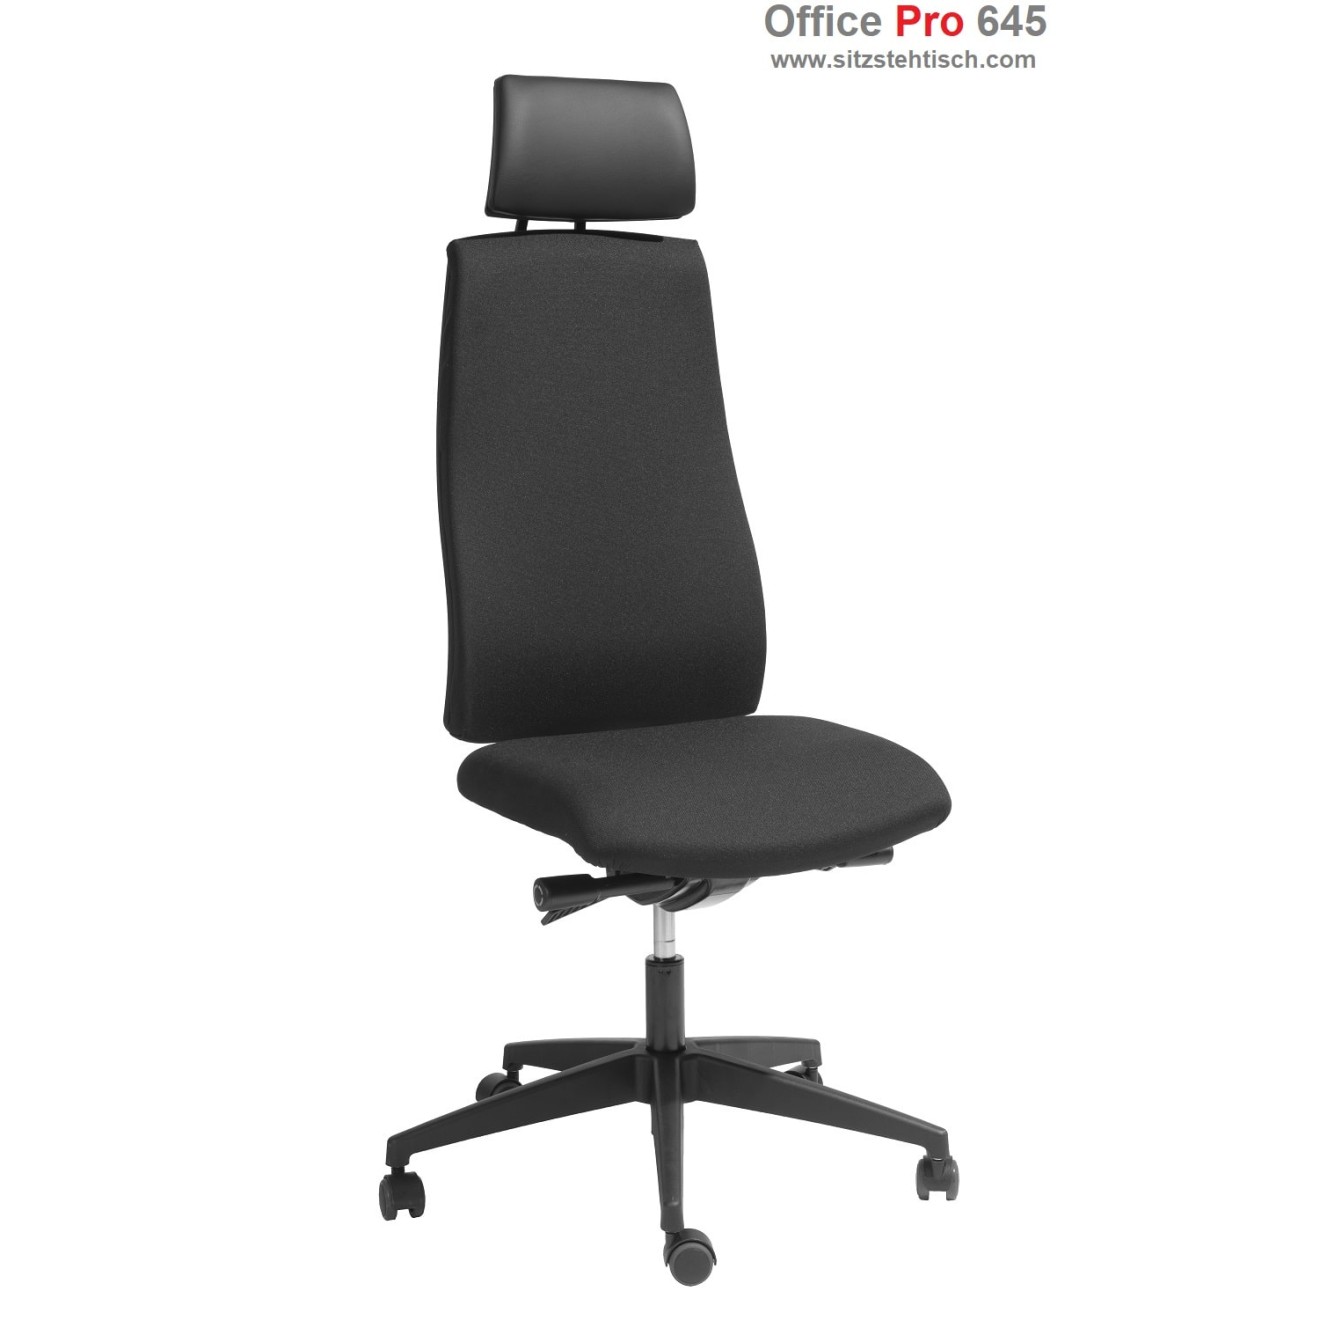 Bürodrehstuhl "Office Pro 645" Synchronmechanik mit individueller Gewichtseinstellung, Sitztiefenverstellung, Sitzneigeverstellung, hohe Rückenlehne, Stoffbezug Schwarz, Belastbar bis 120 kg - Garantie 5 Jahre